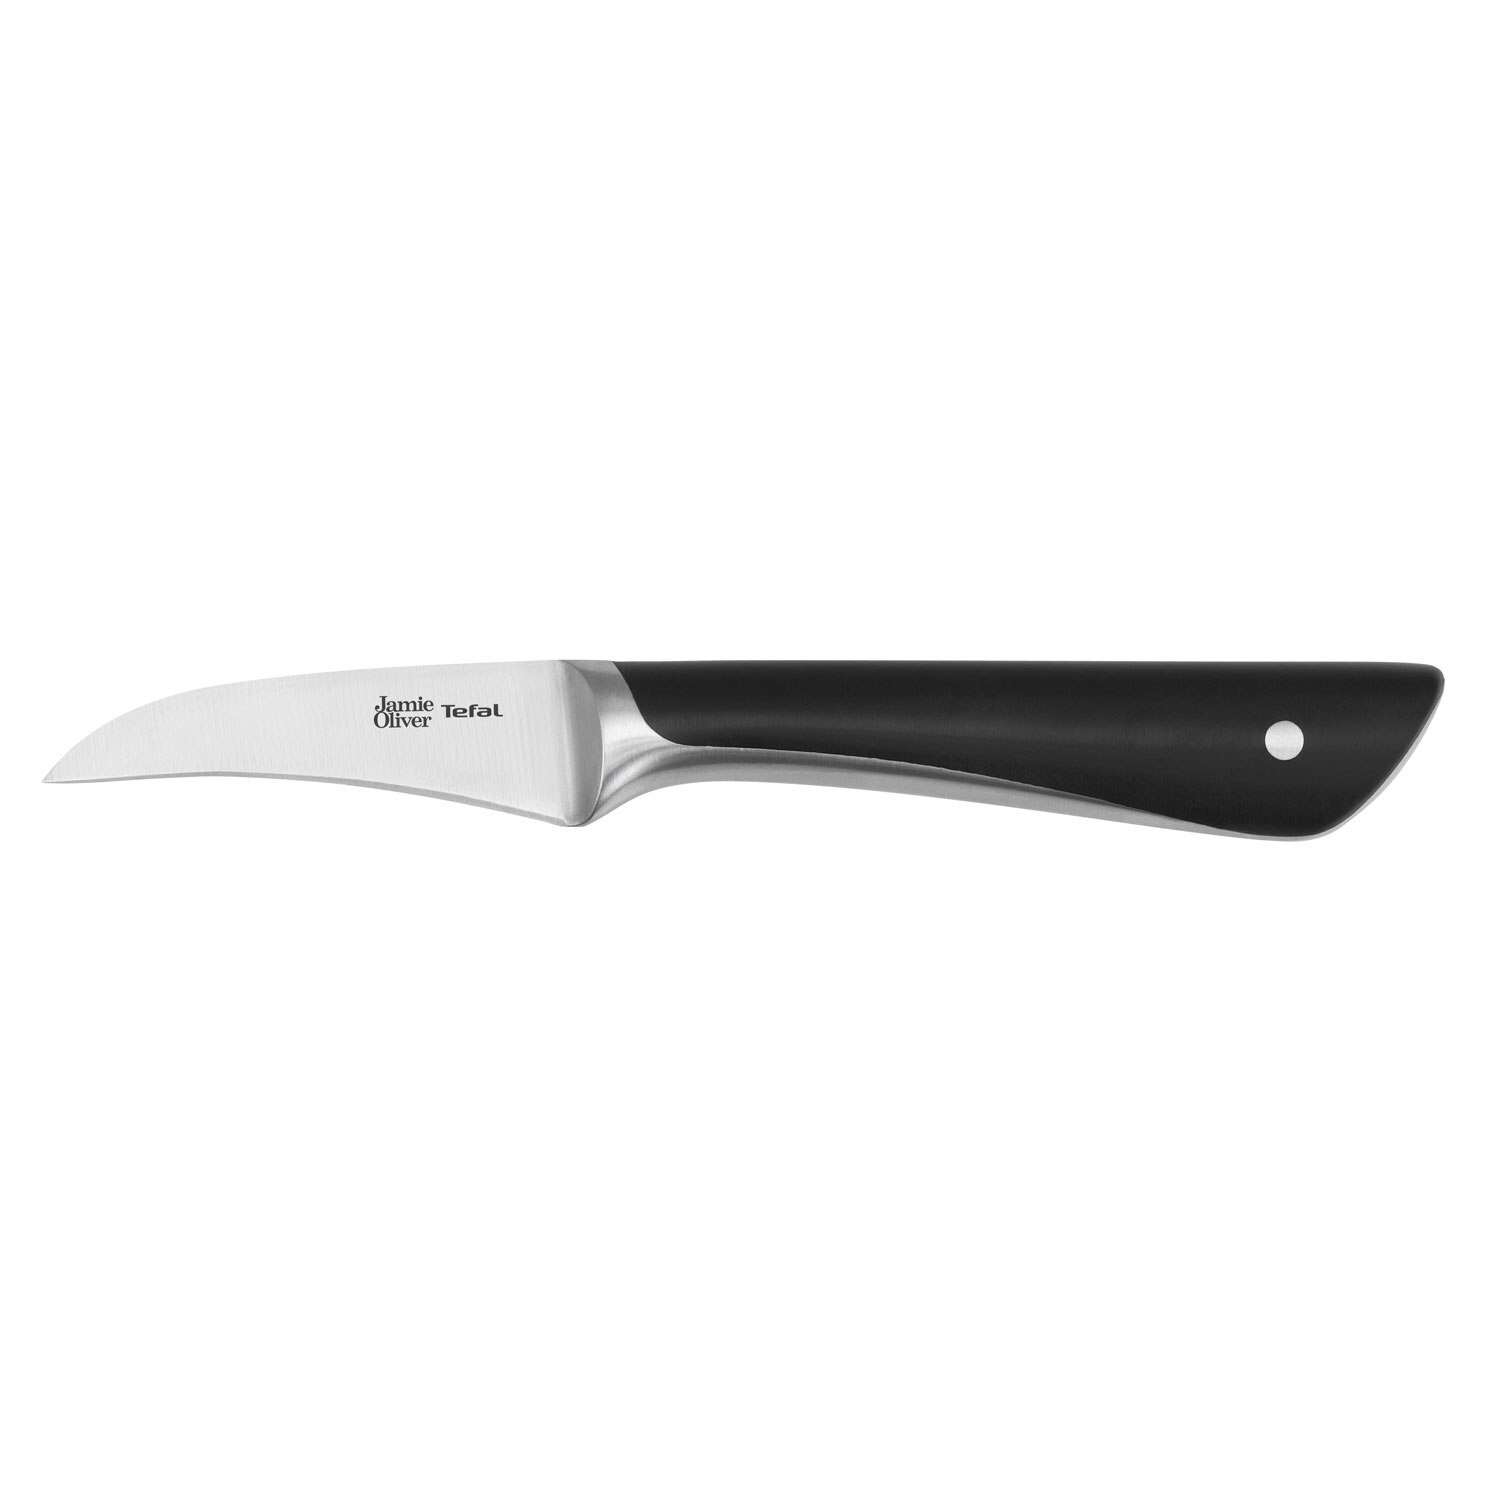 https://royaldesign.com/image/2/tefal-jamie-oliver-knife-7-cm-0